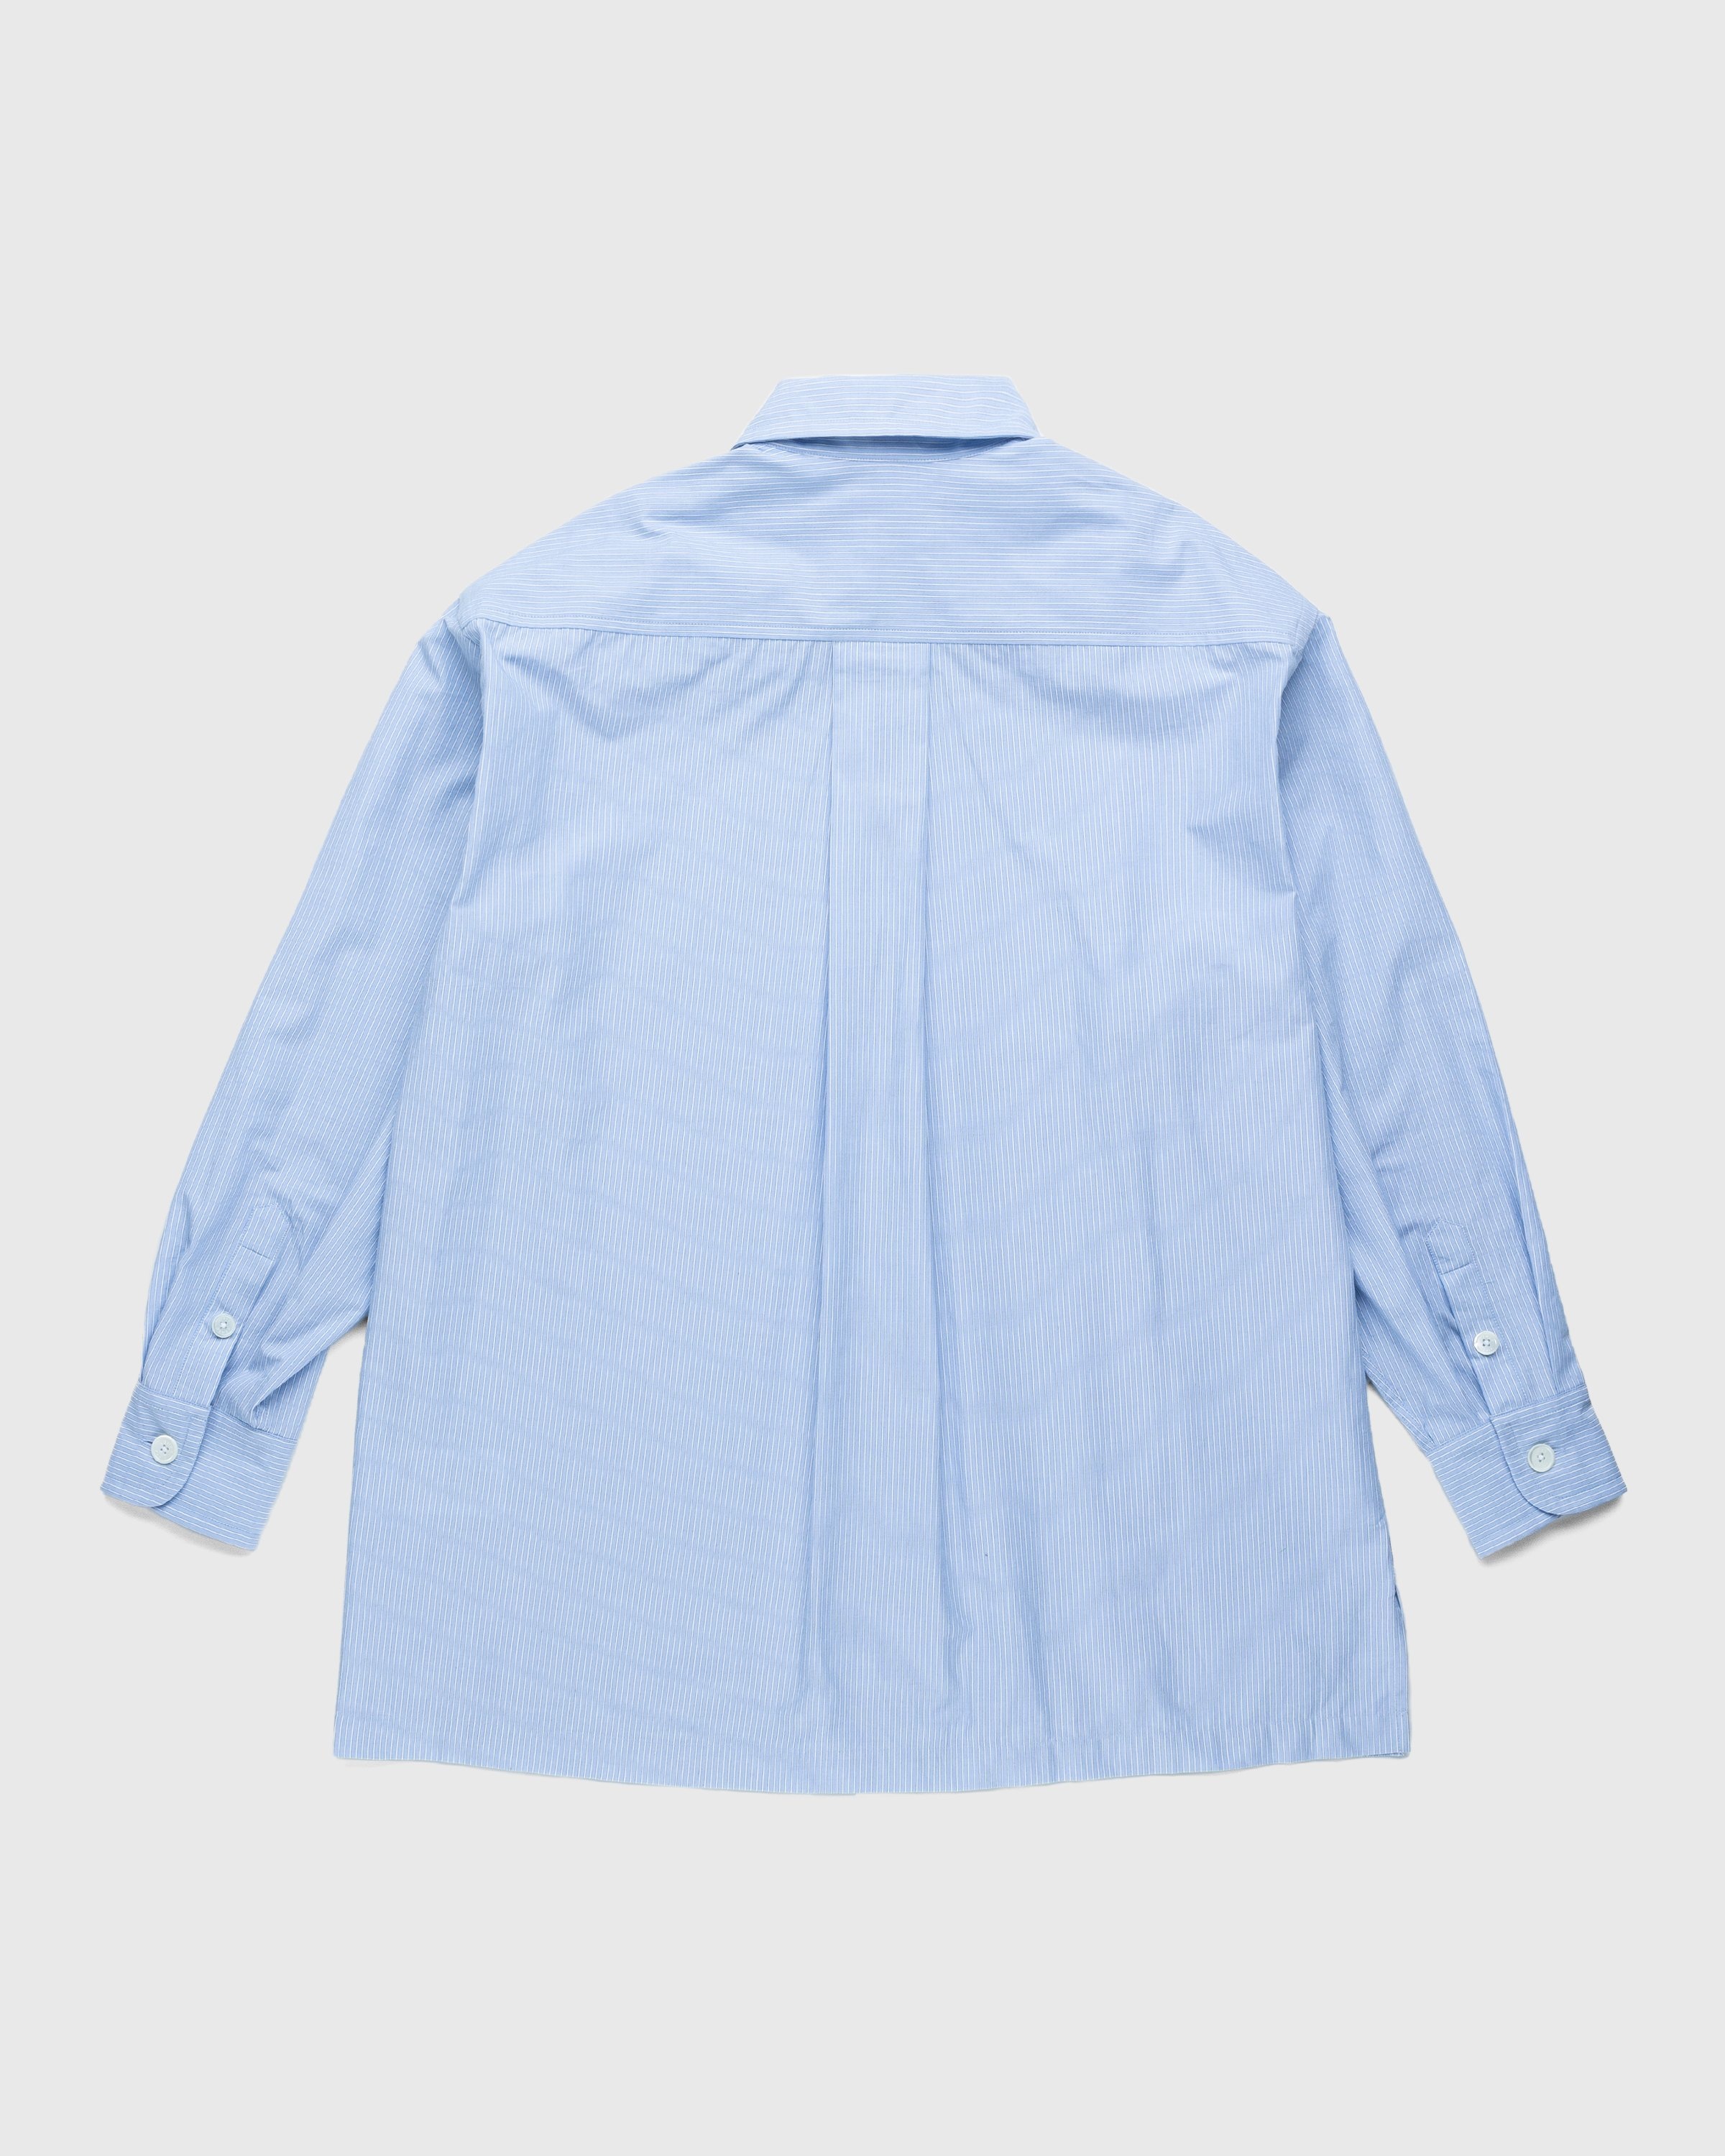 Kenzo – Boke Flower Crest Overshirt Sky Blue - Longsleeve Shirts - Blue - Image 2